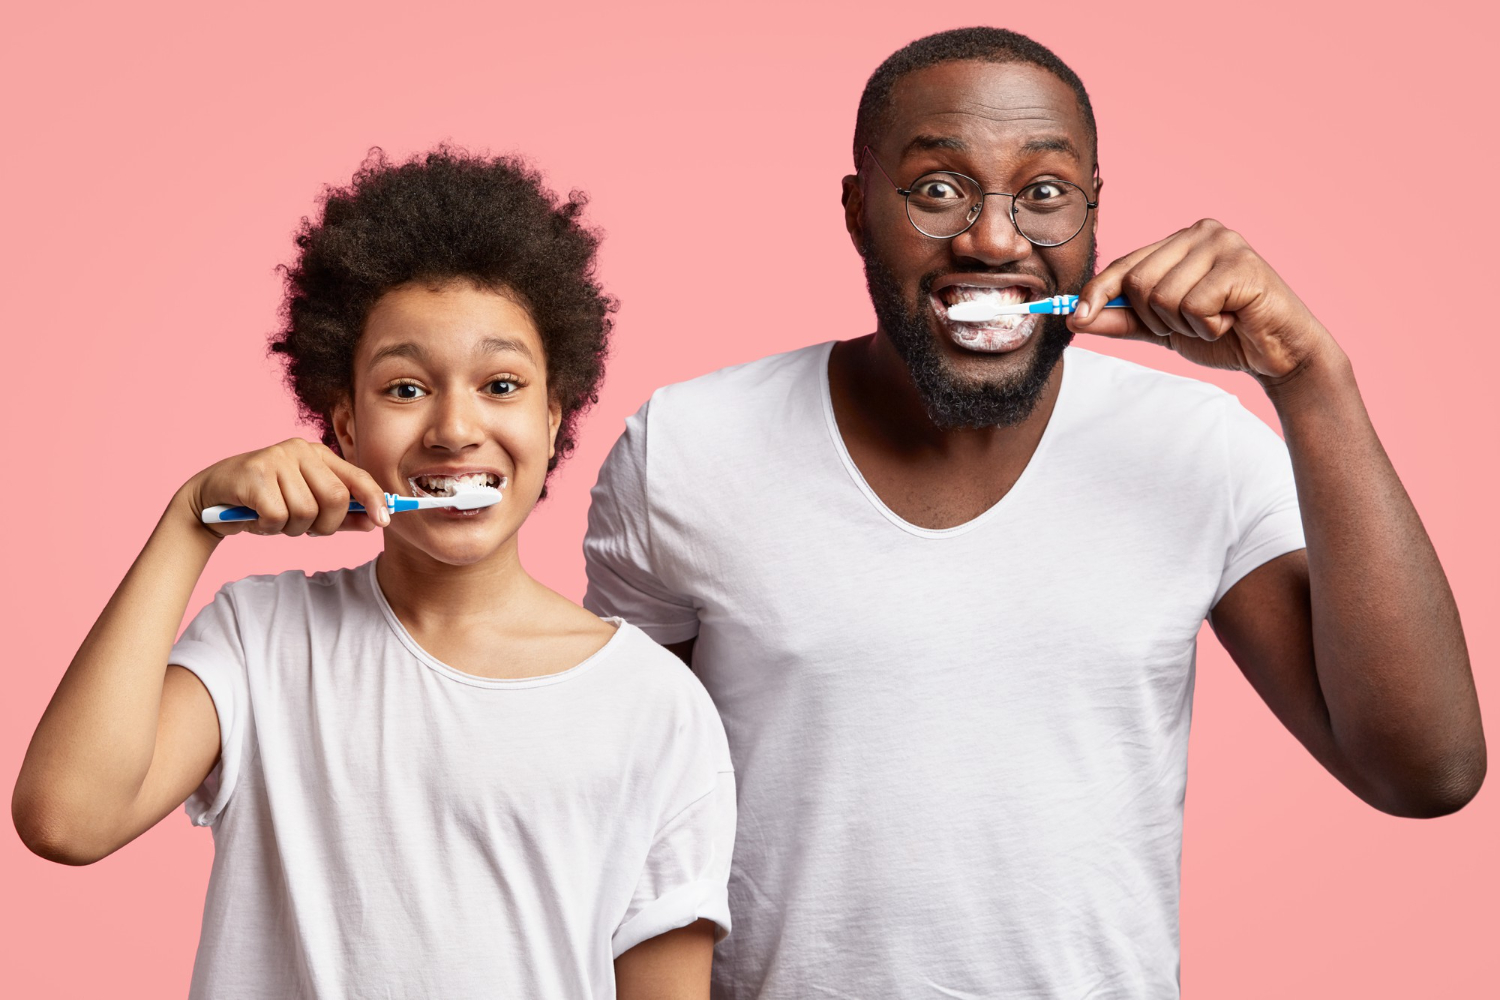 Fotografia colorida de homem e criança escovando os dentes. Ambos usam camisetas brancas e olhar animado.